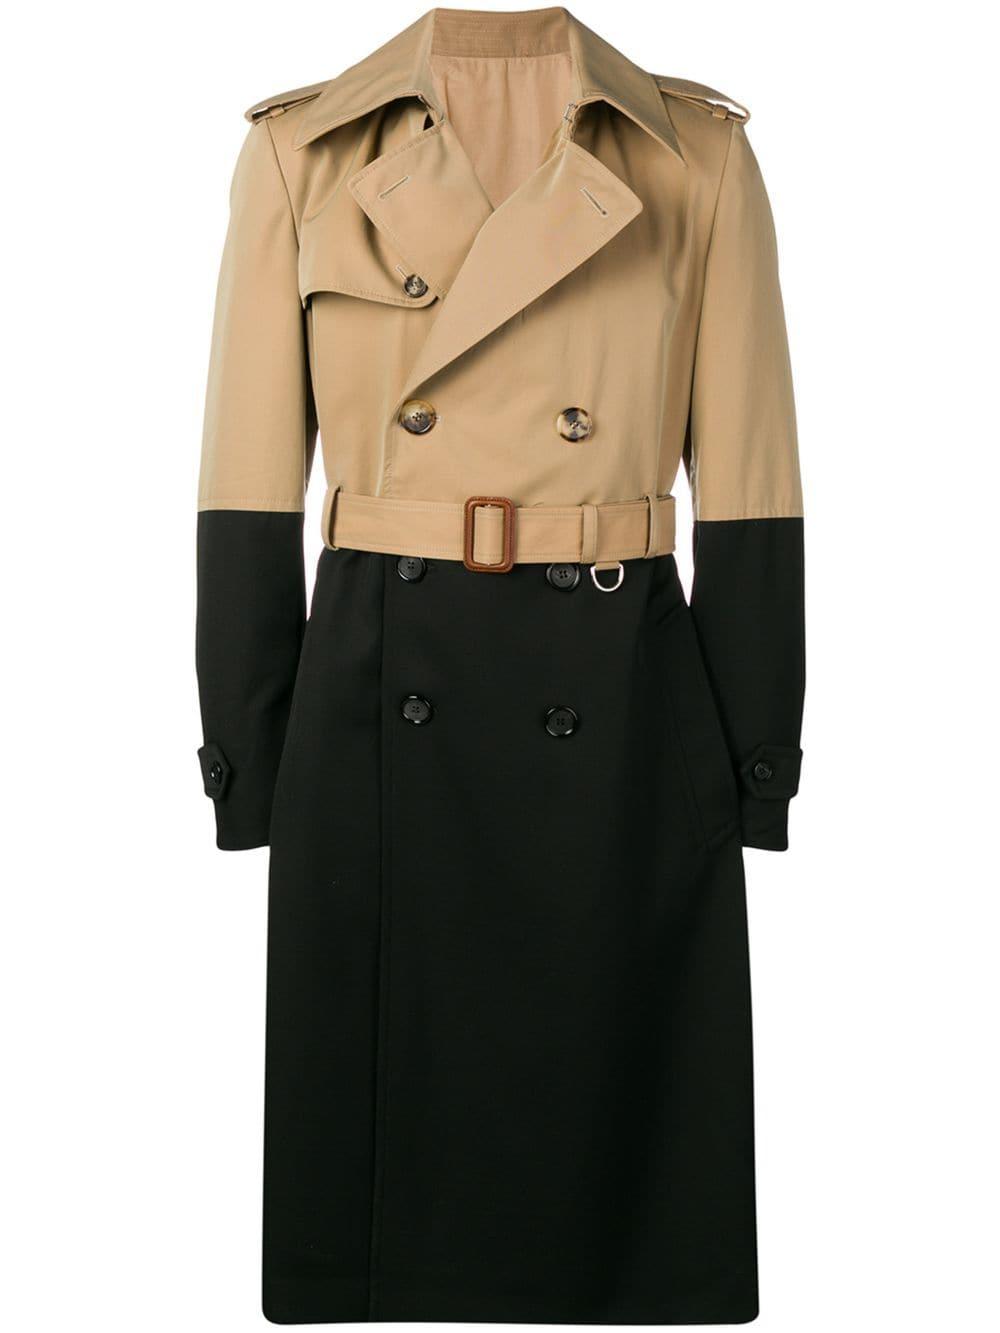 Alexander McQueen Colourblock Trench Coat in Brown for Men - Lyst